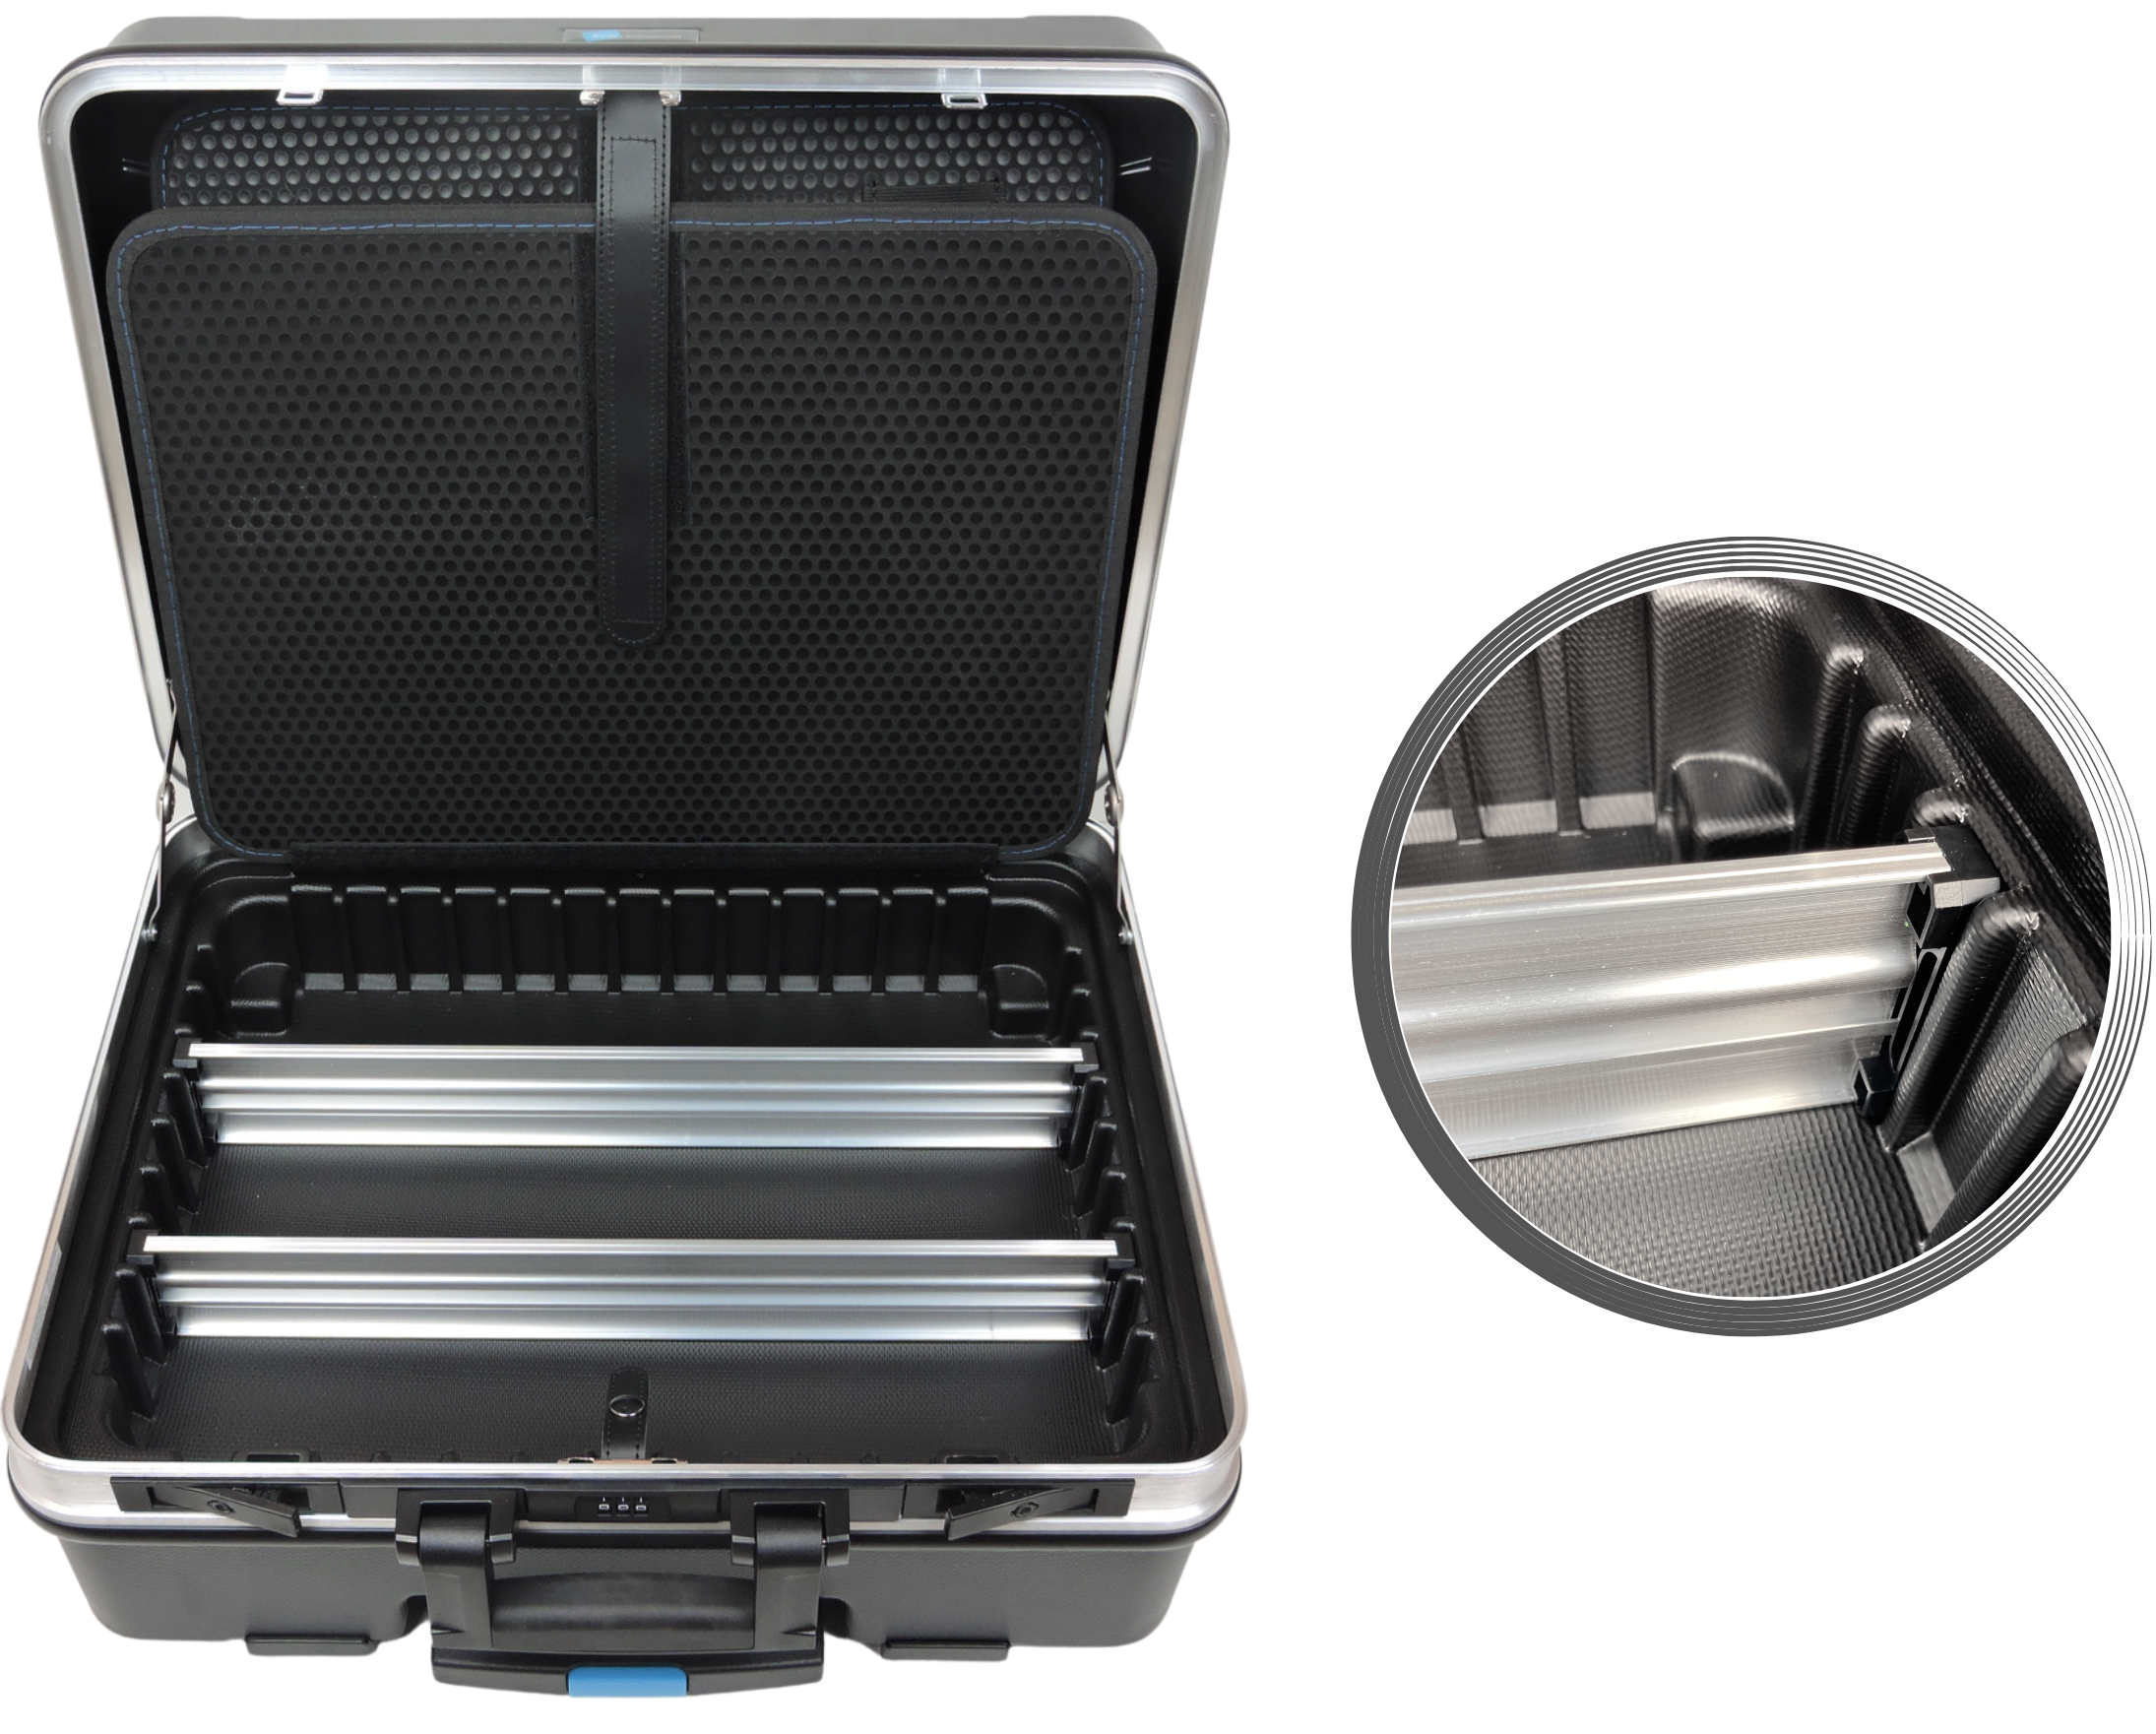 Werkzeuge Socket Box Set High-End with Quality kaufen - 606-18 FAMEX günstig Tool online -